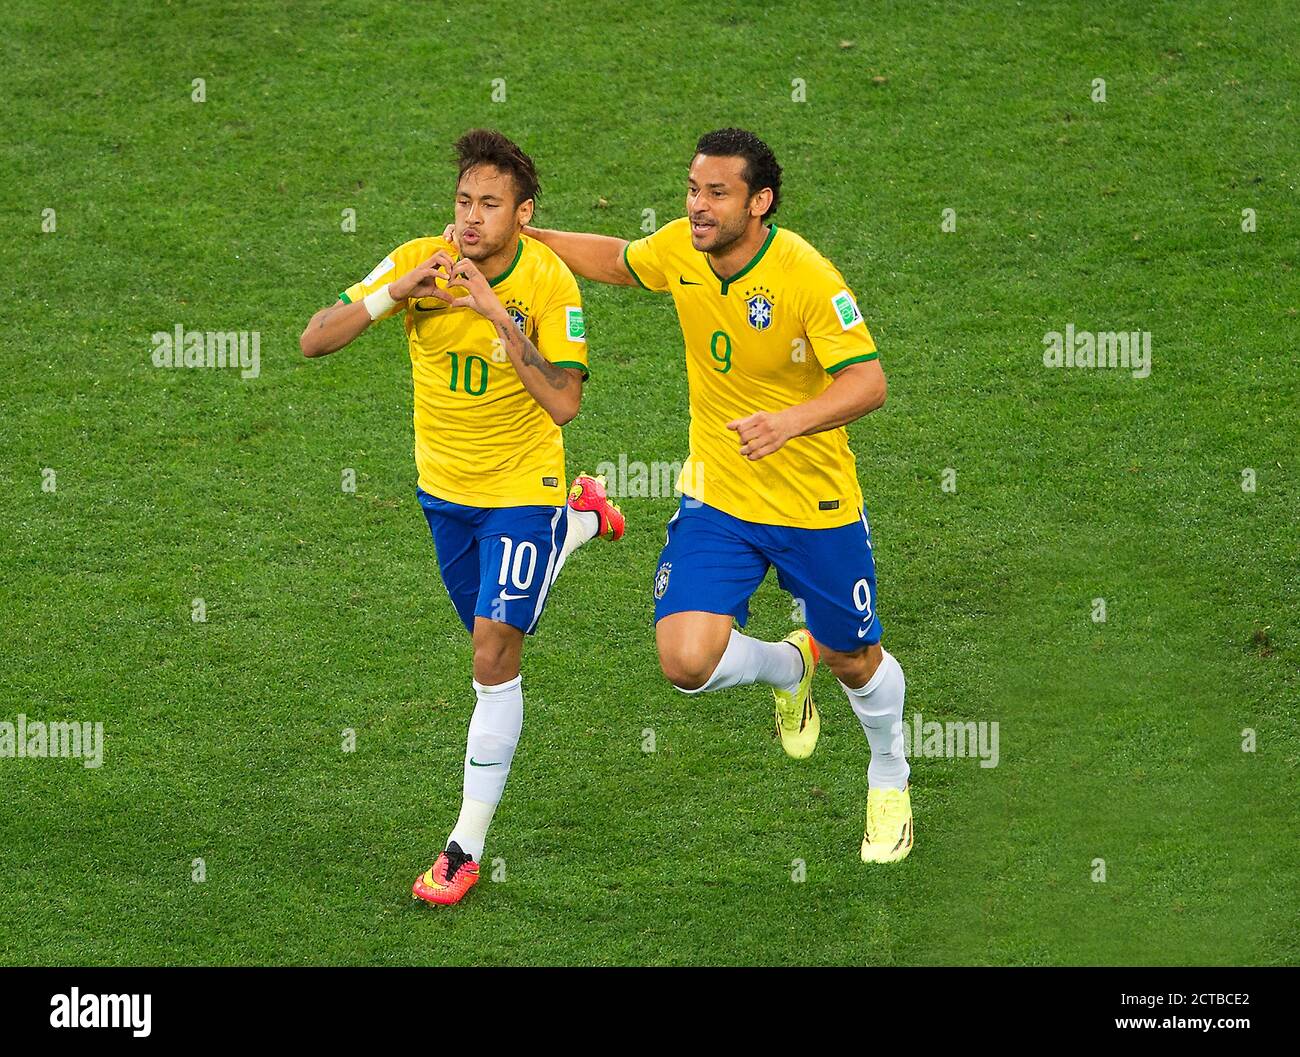 Neymar célèbre son eqialiiser pour le Brésil 1-1 Brésil / Croatie coupe du monde du Brésil 2014 - Arena de Sao Paolo image : Mark pain 12/6/2014 Banque D'Images